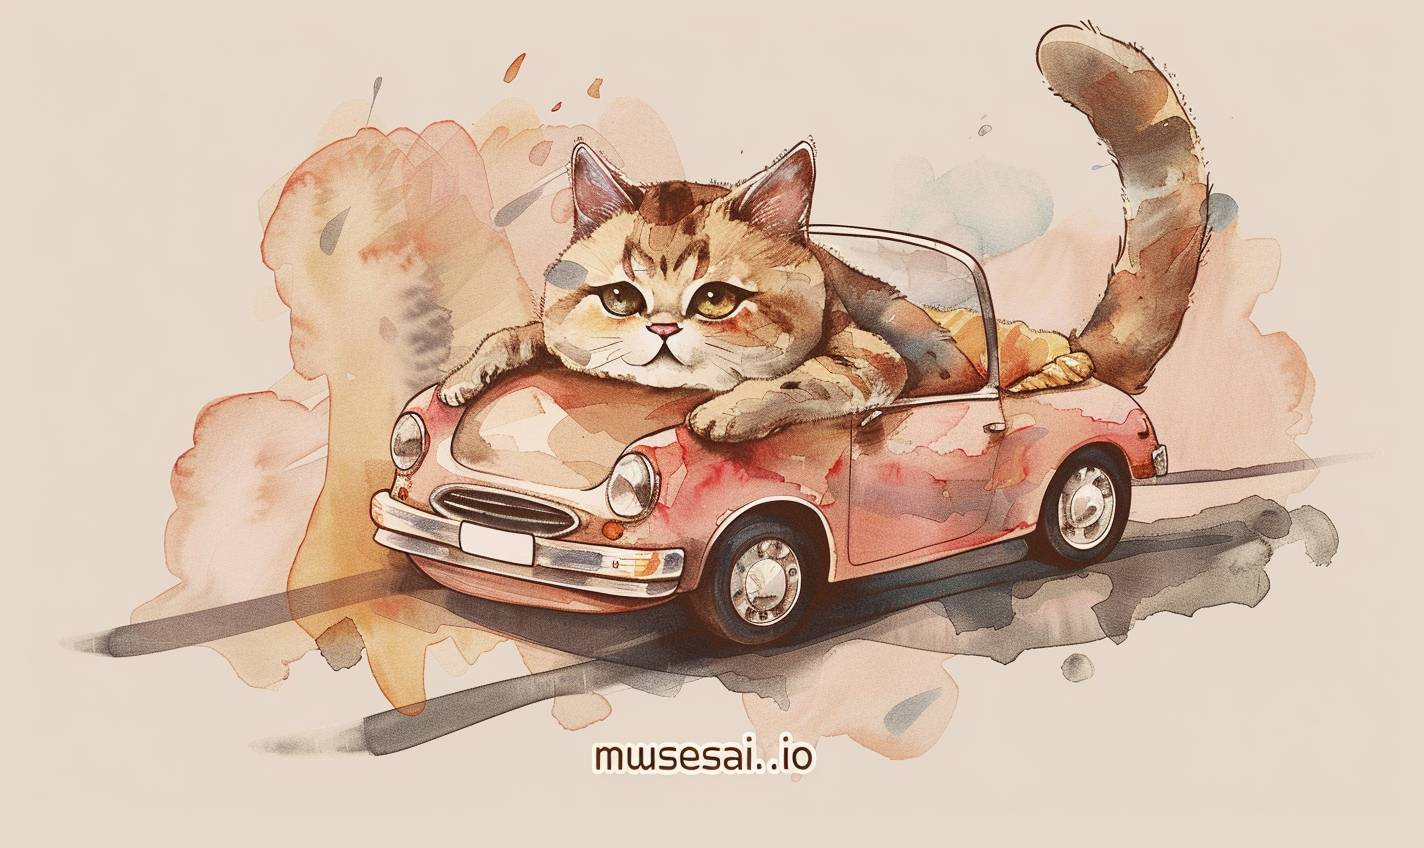 水彩風の2DフラットイラストTシャツデザインで、車の中にふくよかな猫が座っており、「musesai.io」というテキストがあります